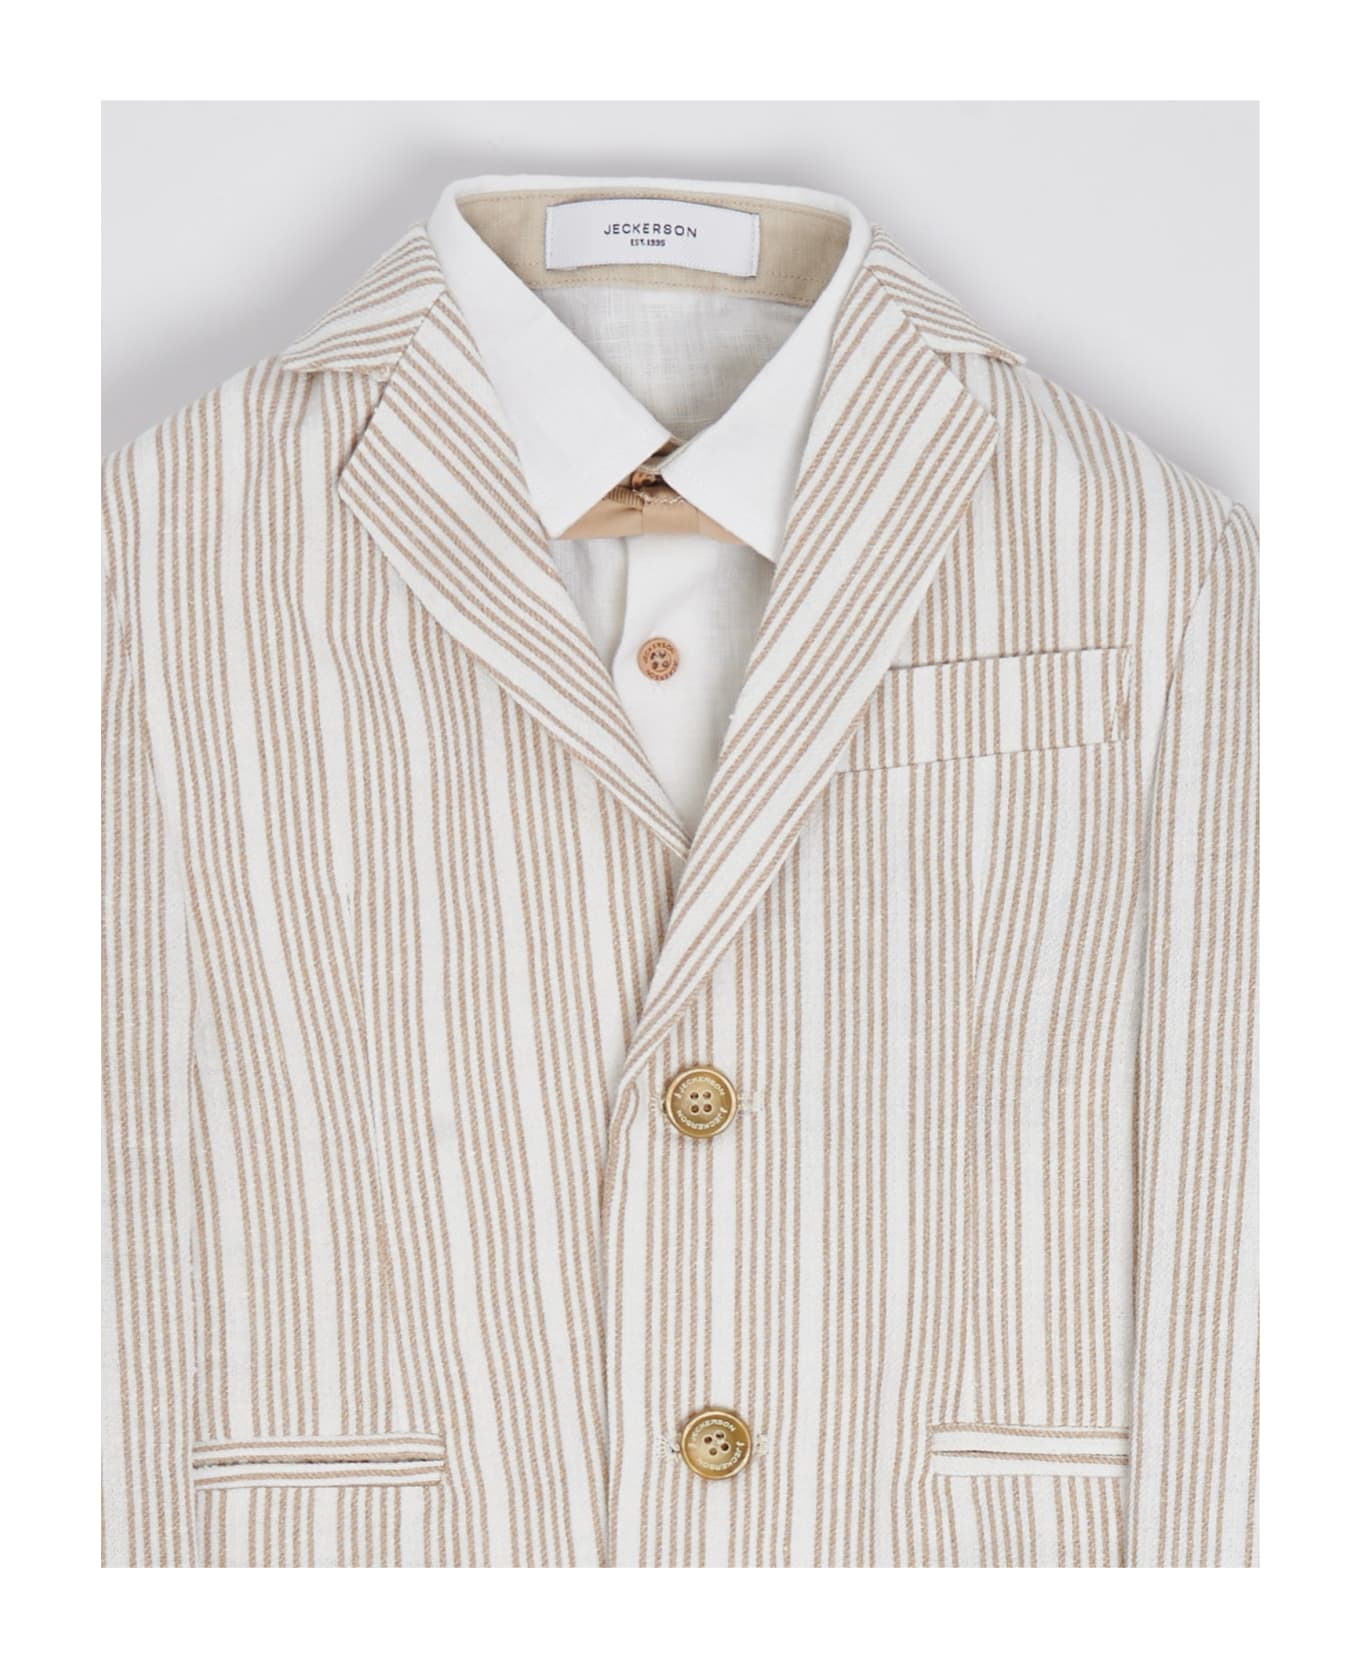 Jeckerson Suits Suit (tailleur) - BIANCO-BEIGE